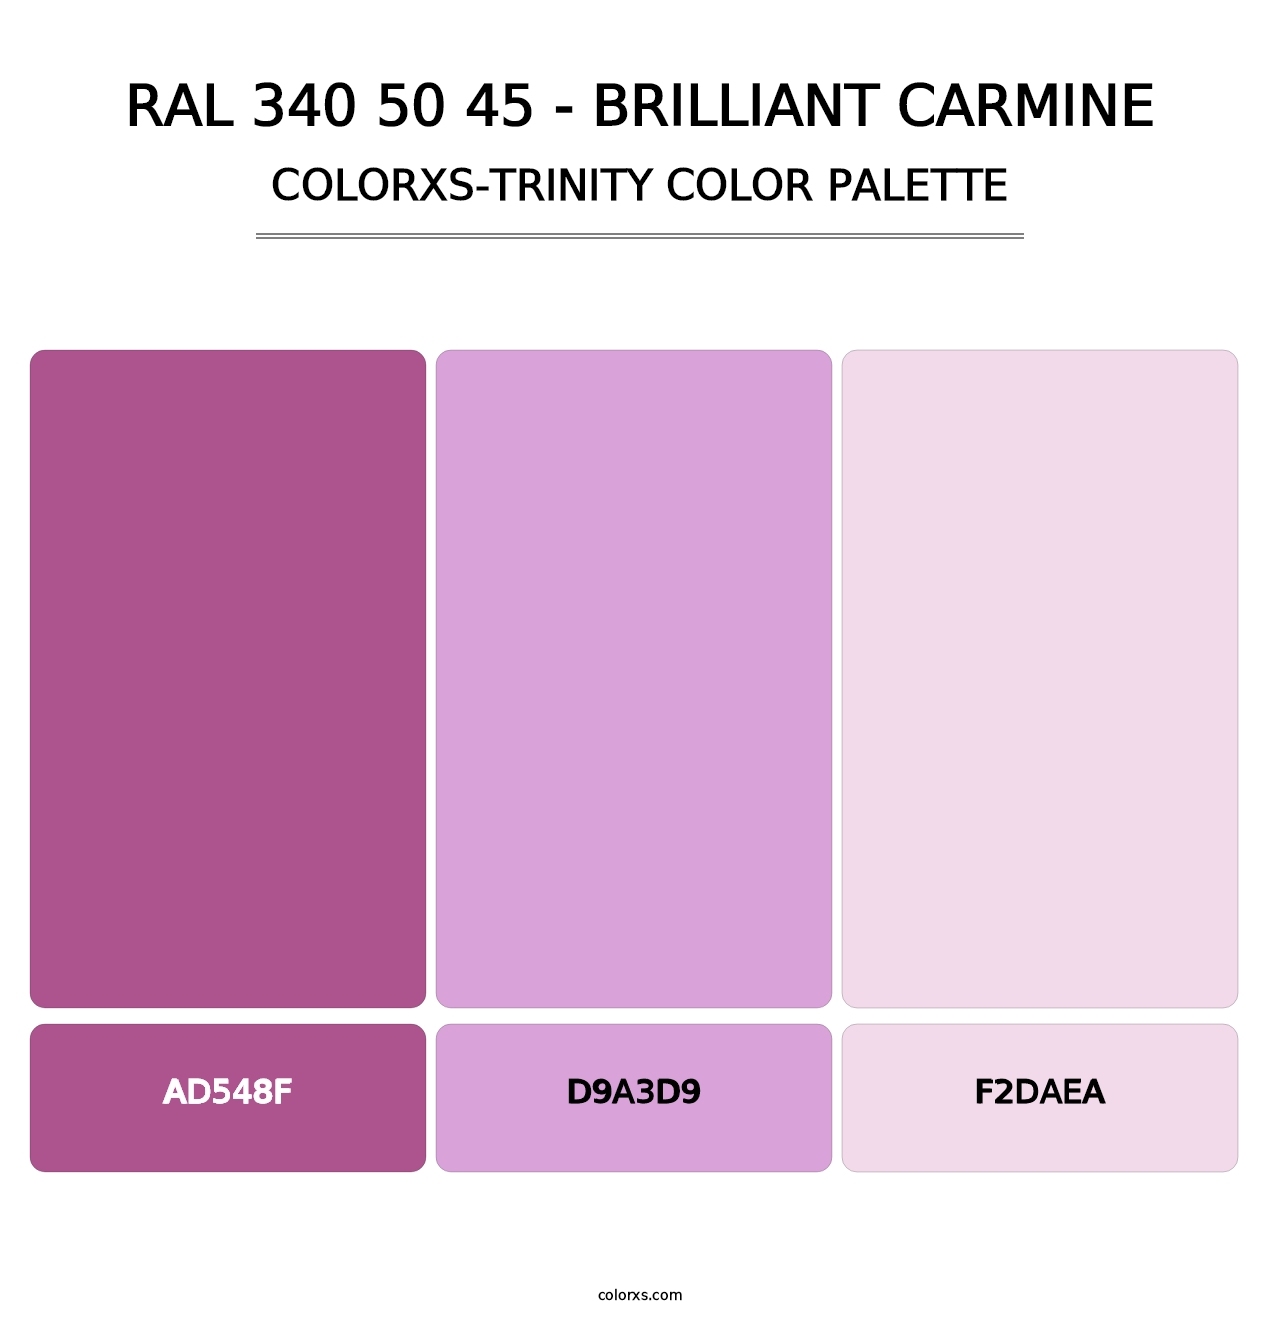 RAL 340 50 45 - Brilliant Carmine - Colorxs Trinity Palette